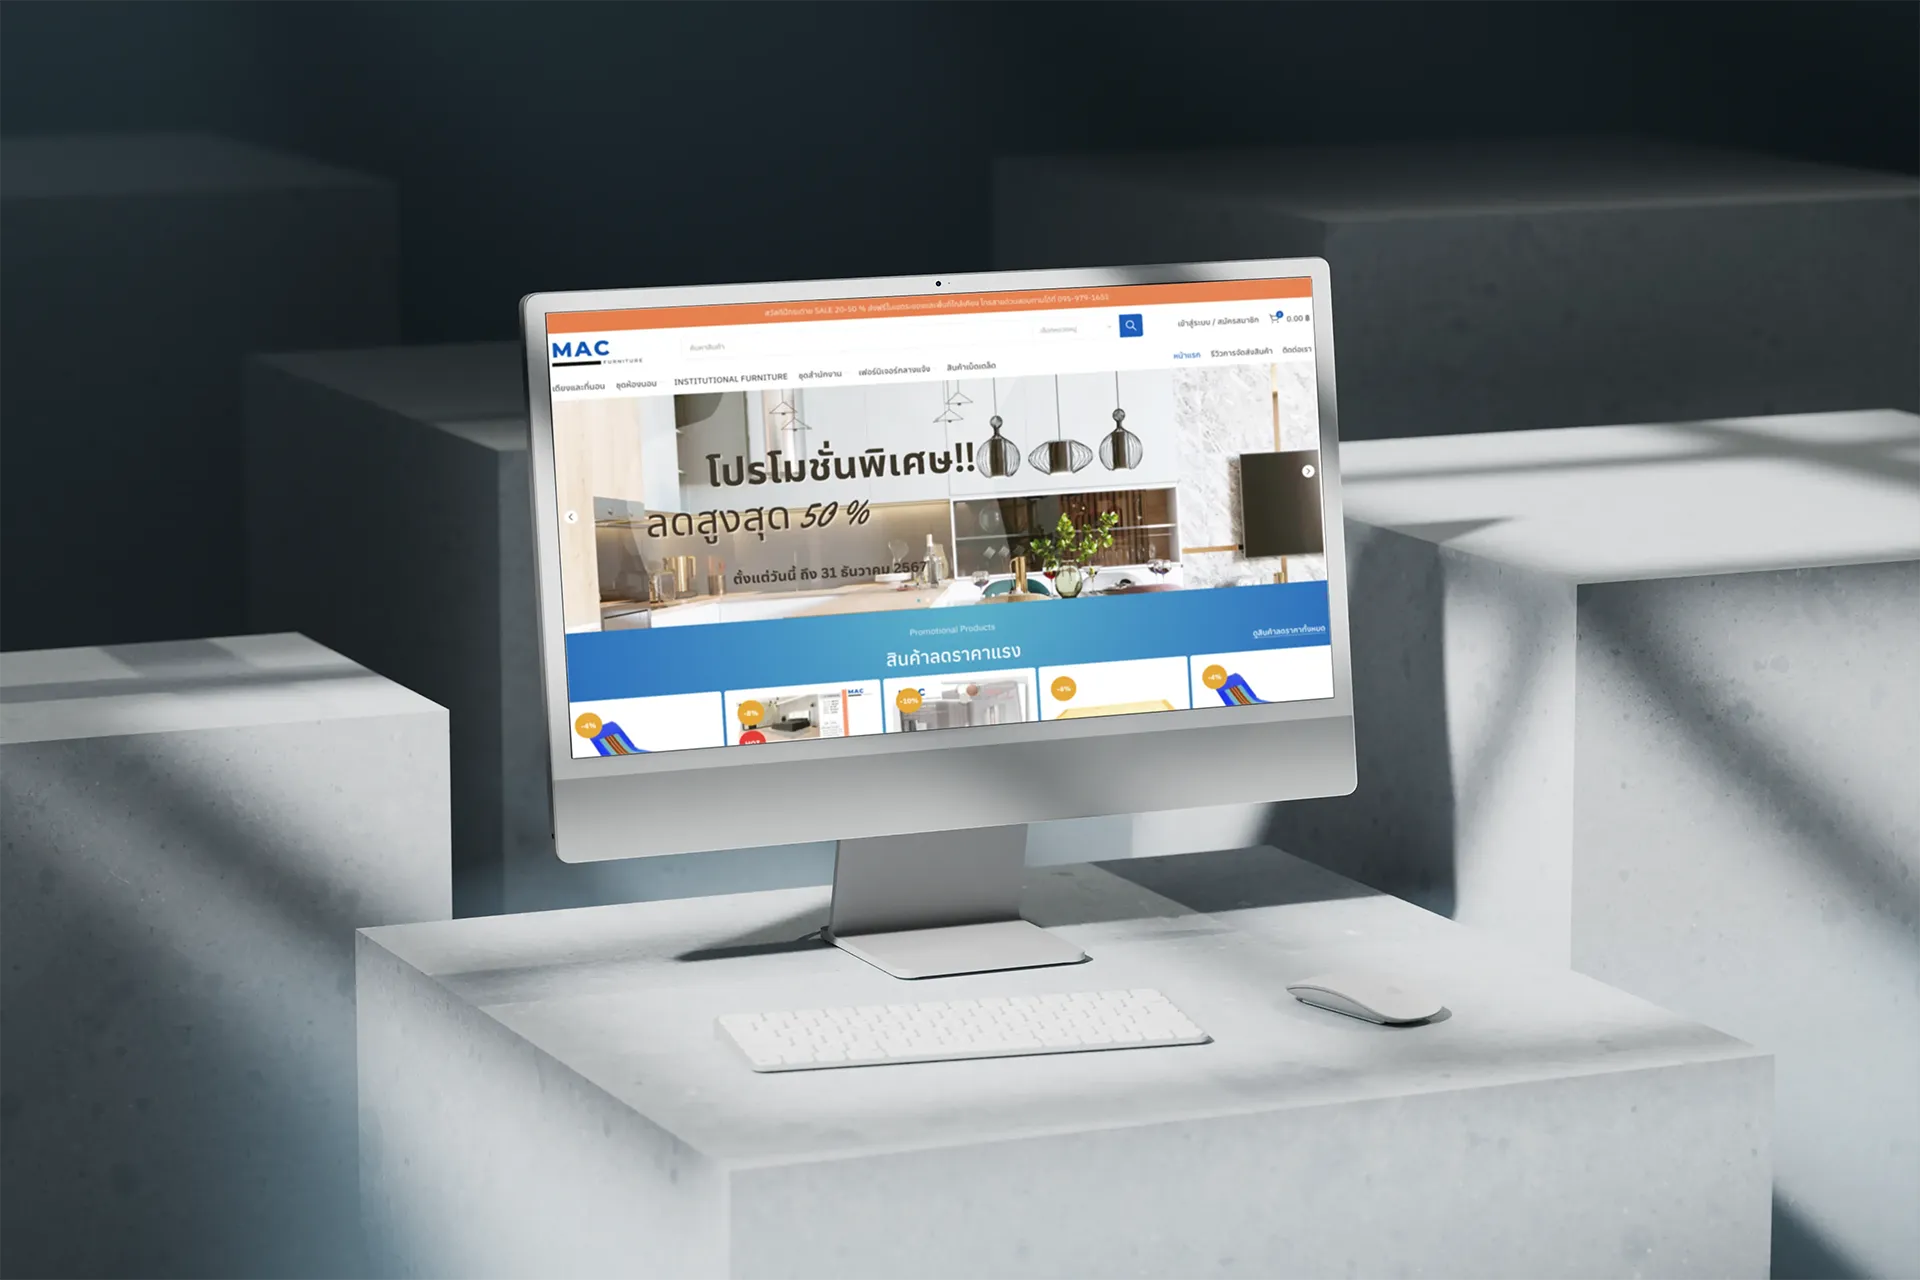 Mac Furniture: เว็บไซต์ขายเฟอร์นิเจอร์ พร้อมจ่ายเงินออนไลน์ได้ผ่านบัตรเครดิต